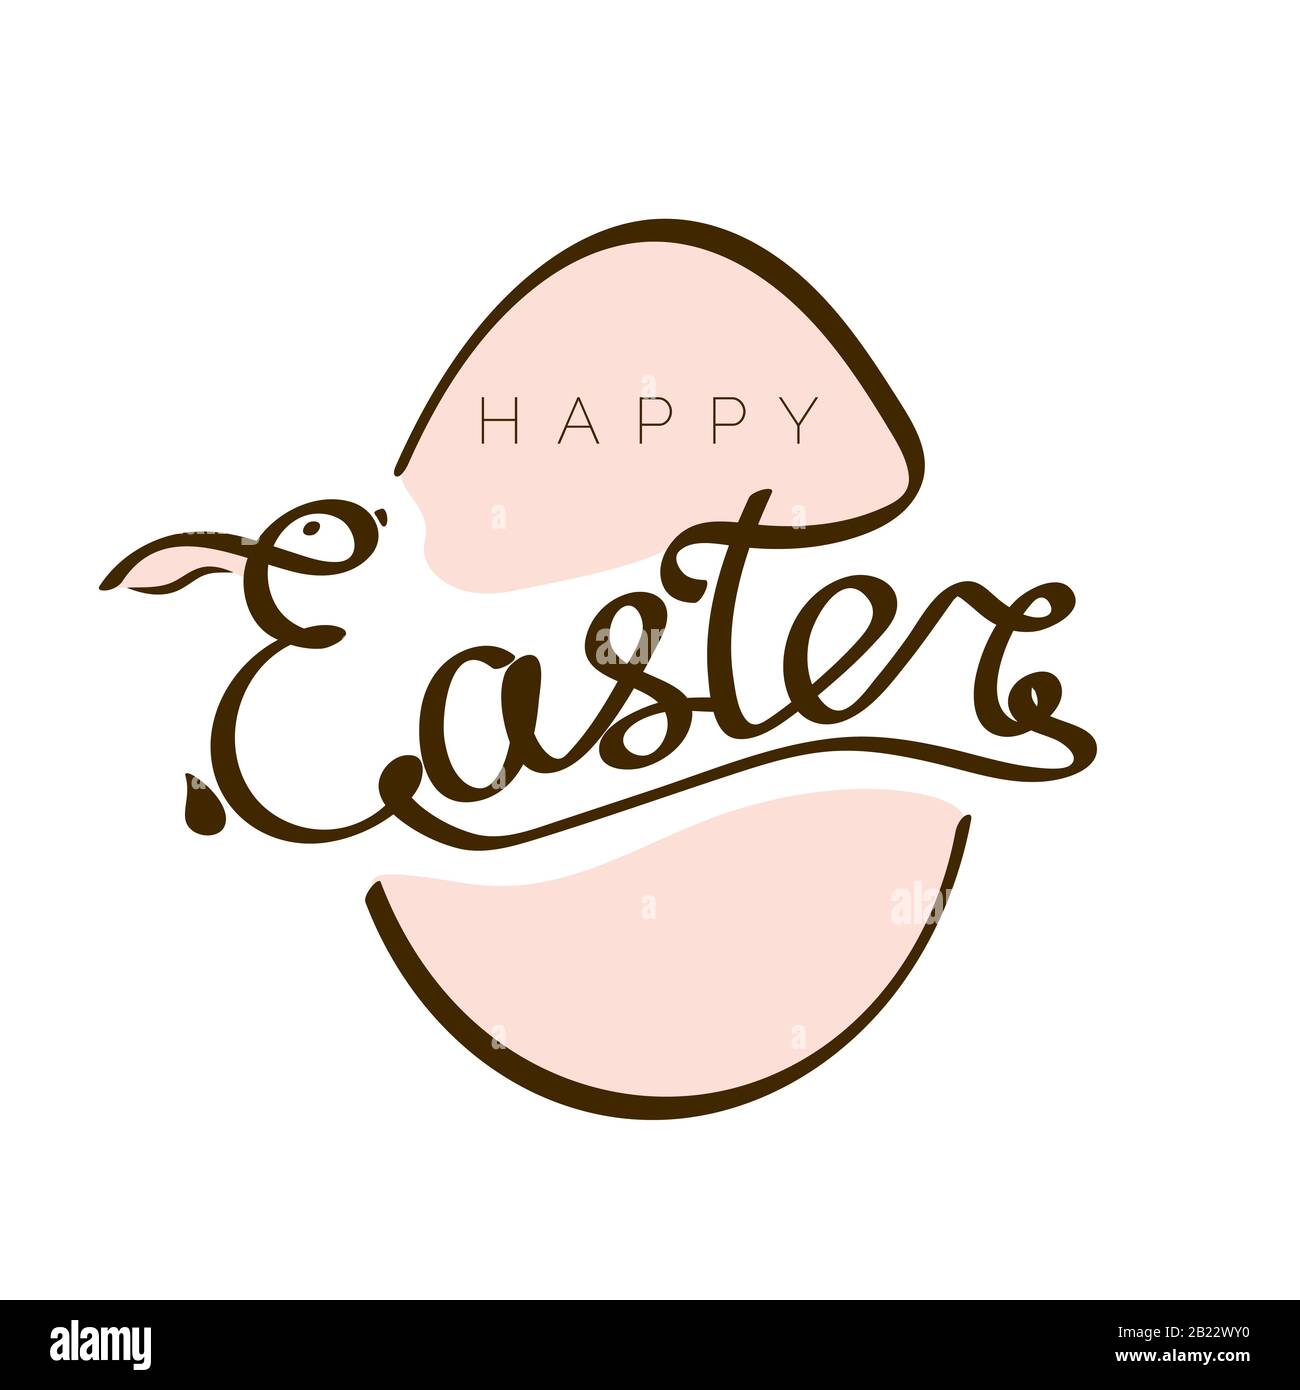 Handgezeichnete Aufschrift Happy Easter mit Kaninchen-Silhouette in E- und Ei-Vorlage. Illustration für Design Headline, Banner und Postkarte. Vektor Stock Vektor